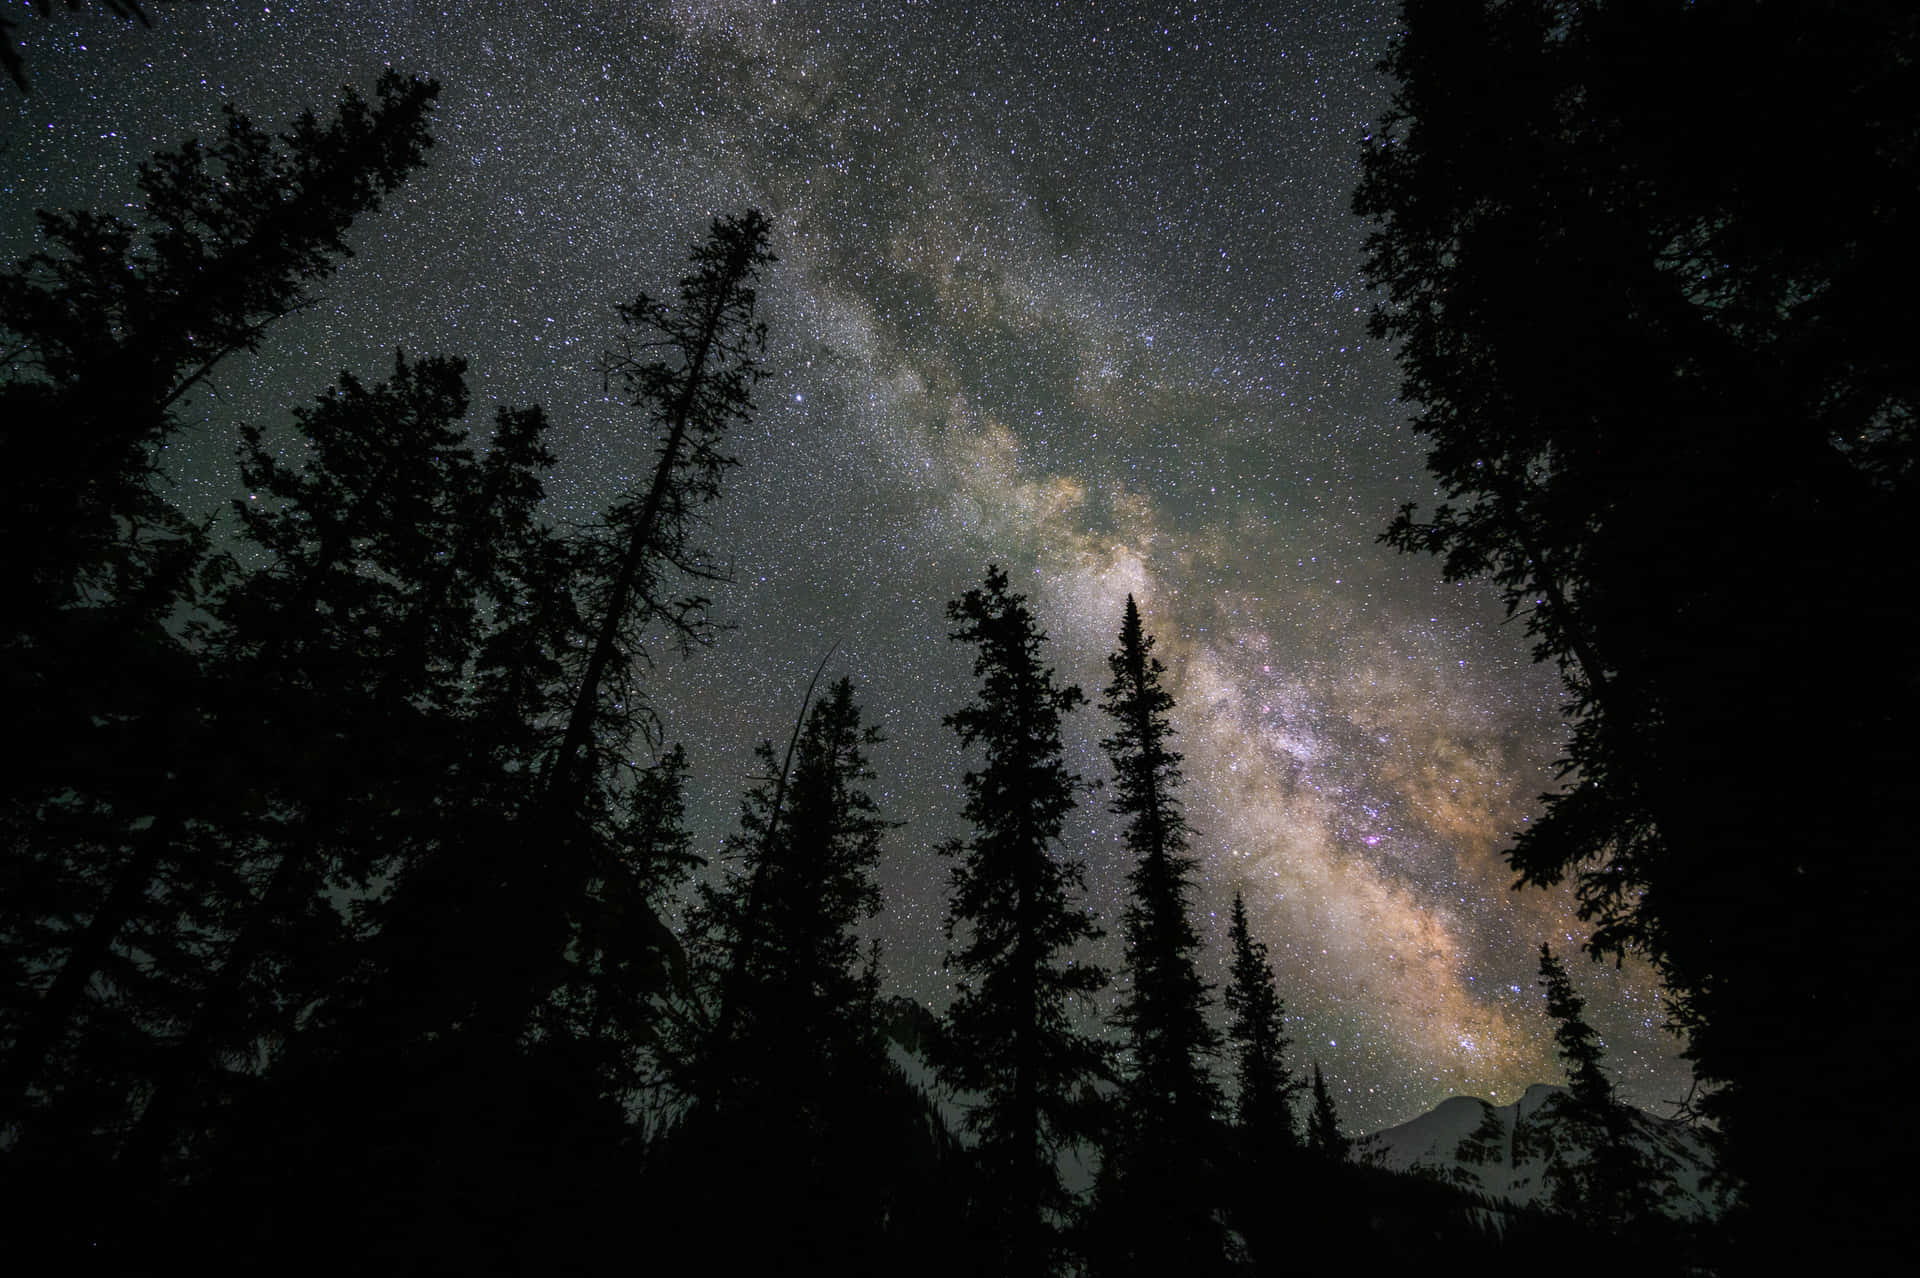 Capturandola Belleza De Un Cielo Estrellado De Noche